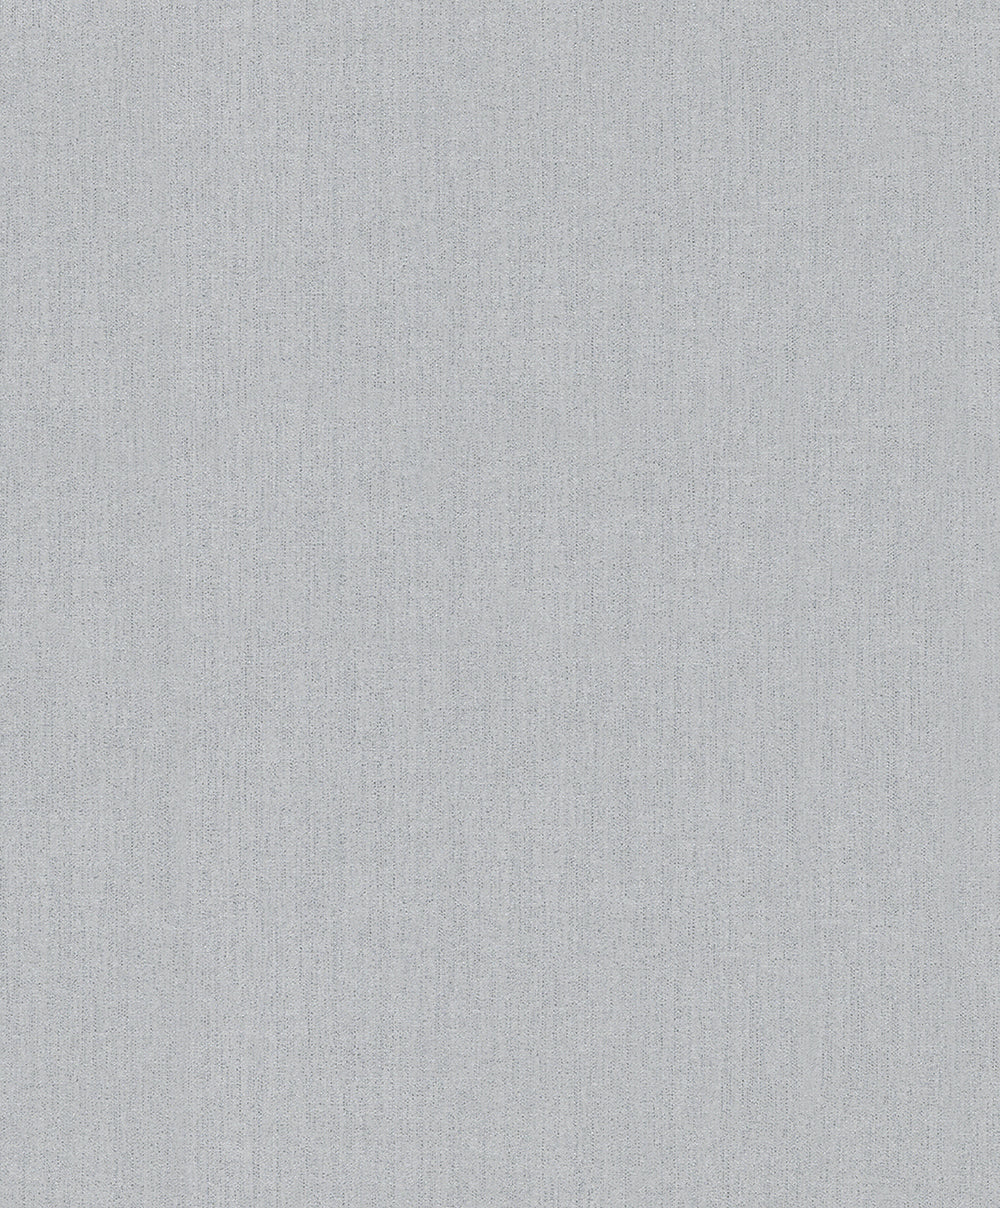 Schoner Wohnen New Spirit - Textured Metallic Plain plain wallpaper Marburg Roll Grey  32707